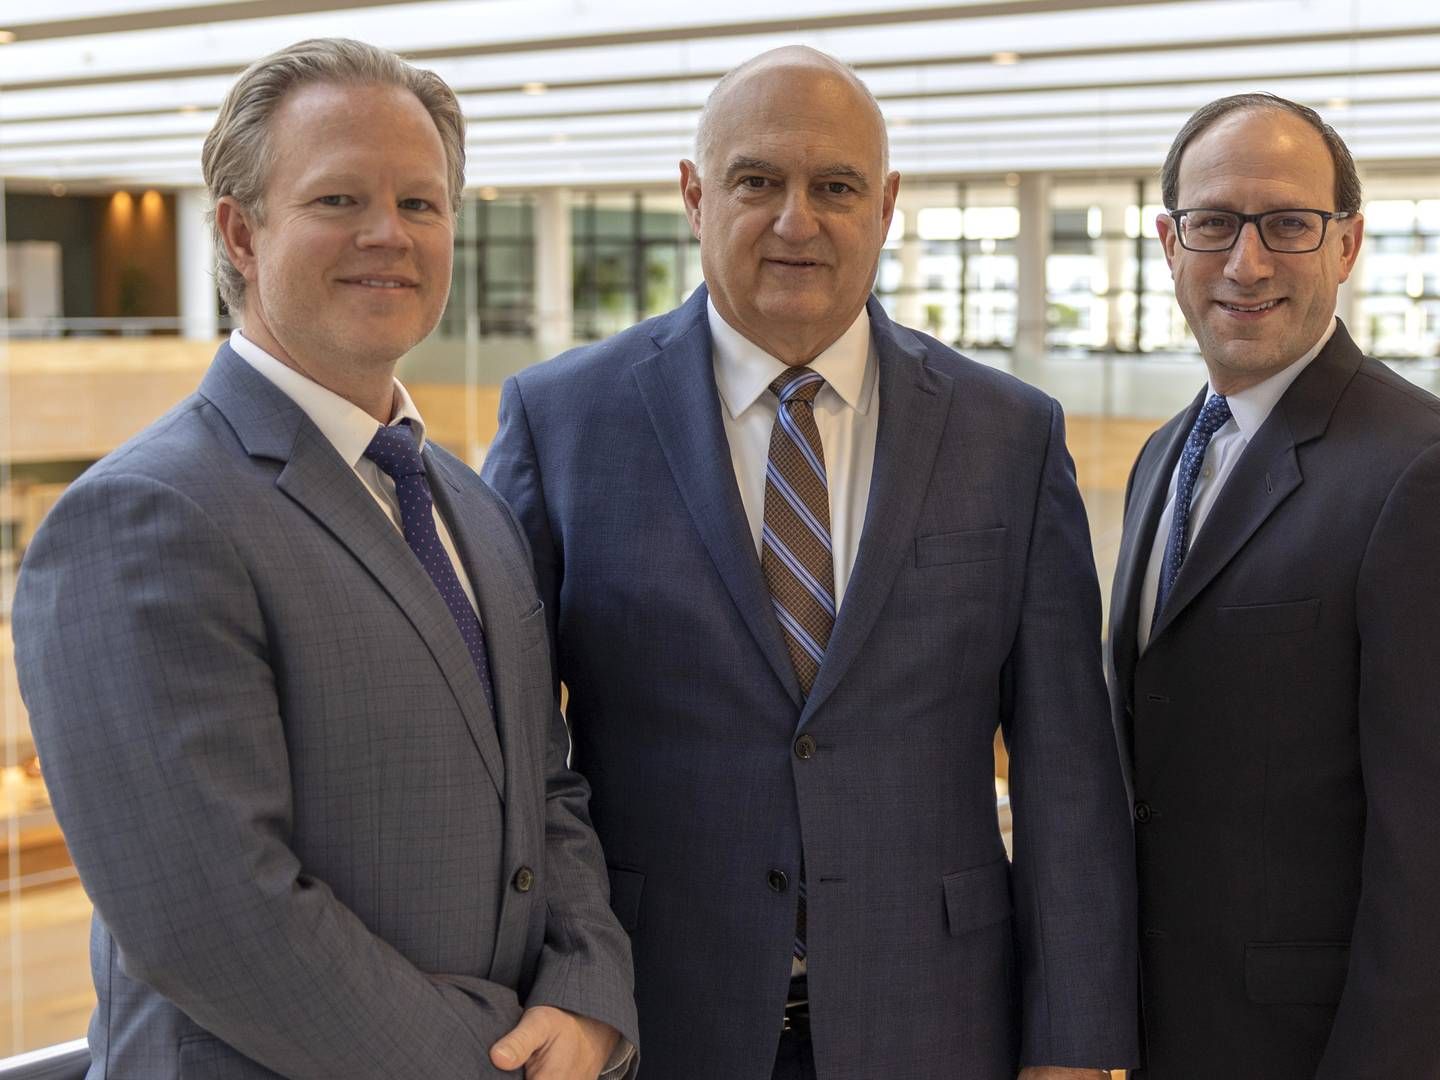 Bioporto amerikanske ledelse fra venstre: Chris Bird, CMO, Tony Pare, CEO og Neil Goldman, CFO. | Foto: Bioporto/PR